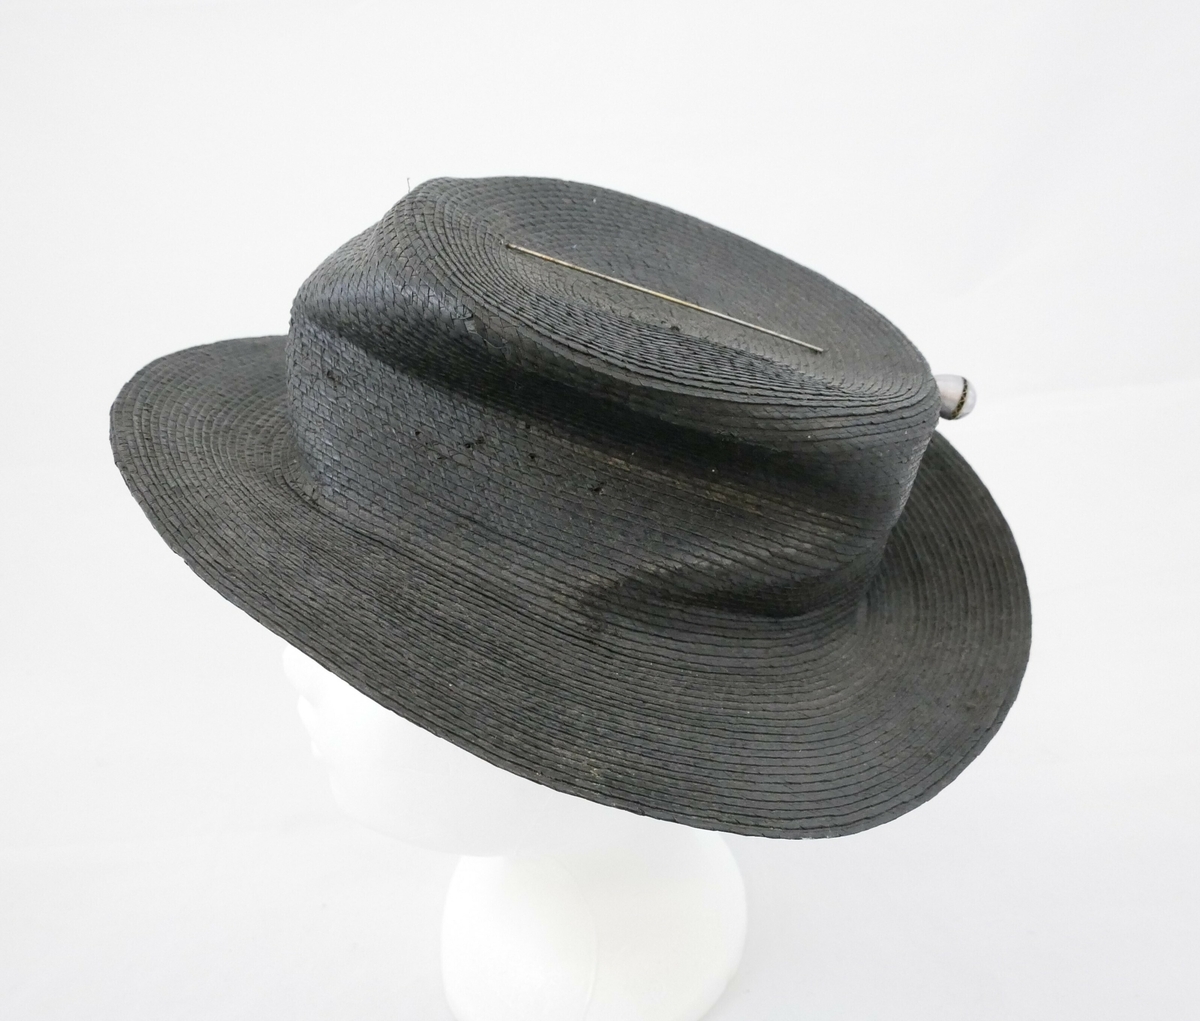 Sort stråhatt med flat pull og rund brem. Den er foret med sort bomullsstoff og på toppen av hatten er det en hattenål. 